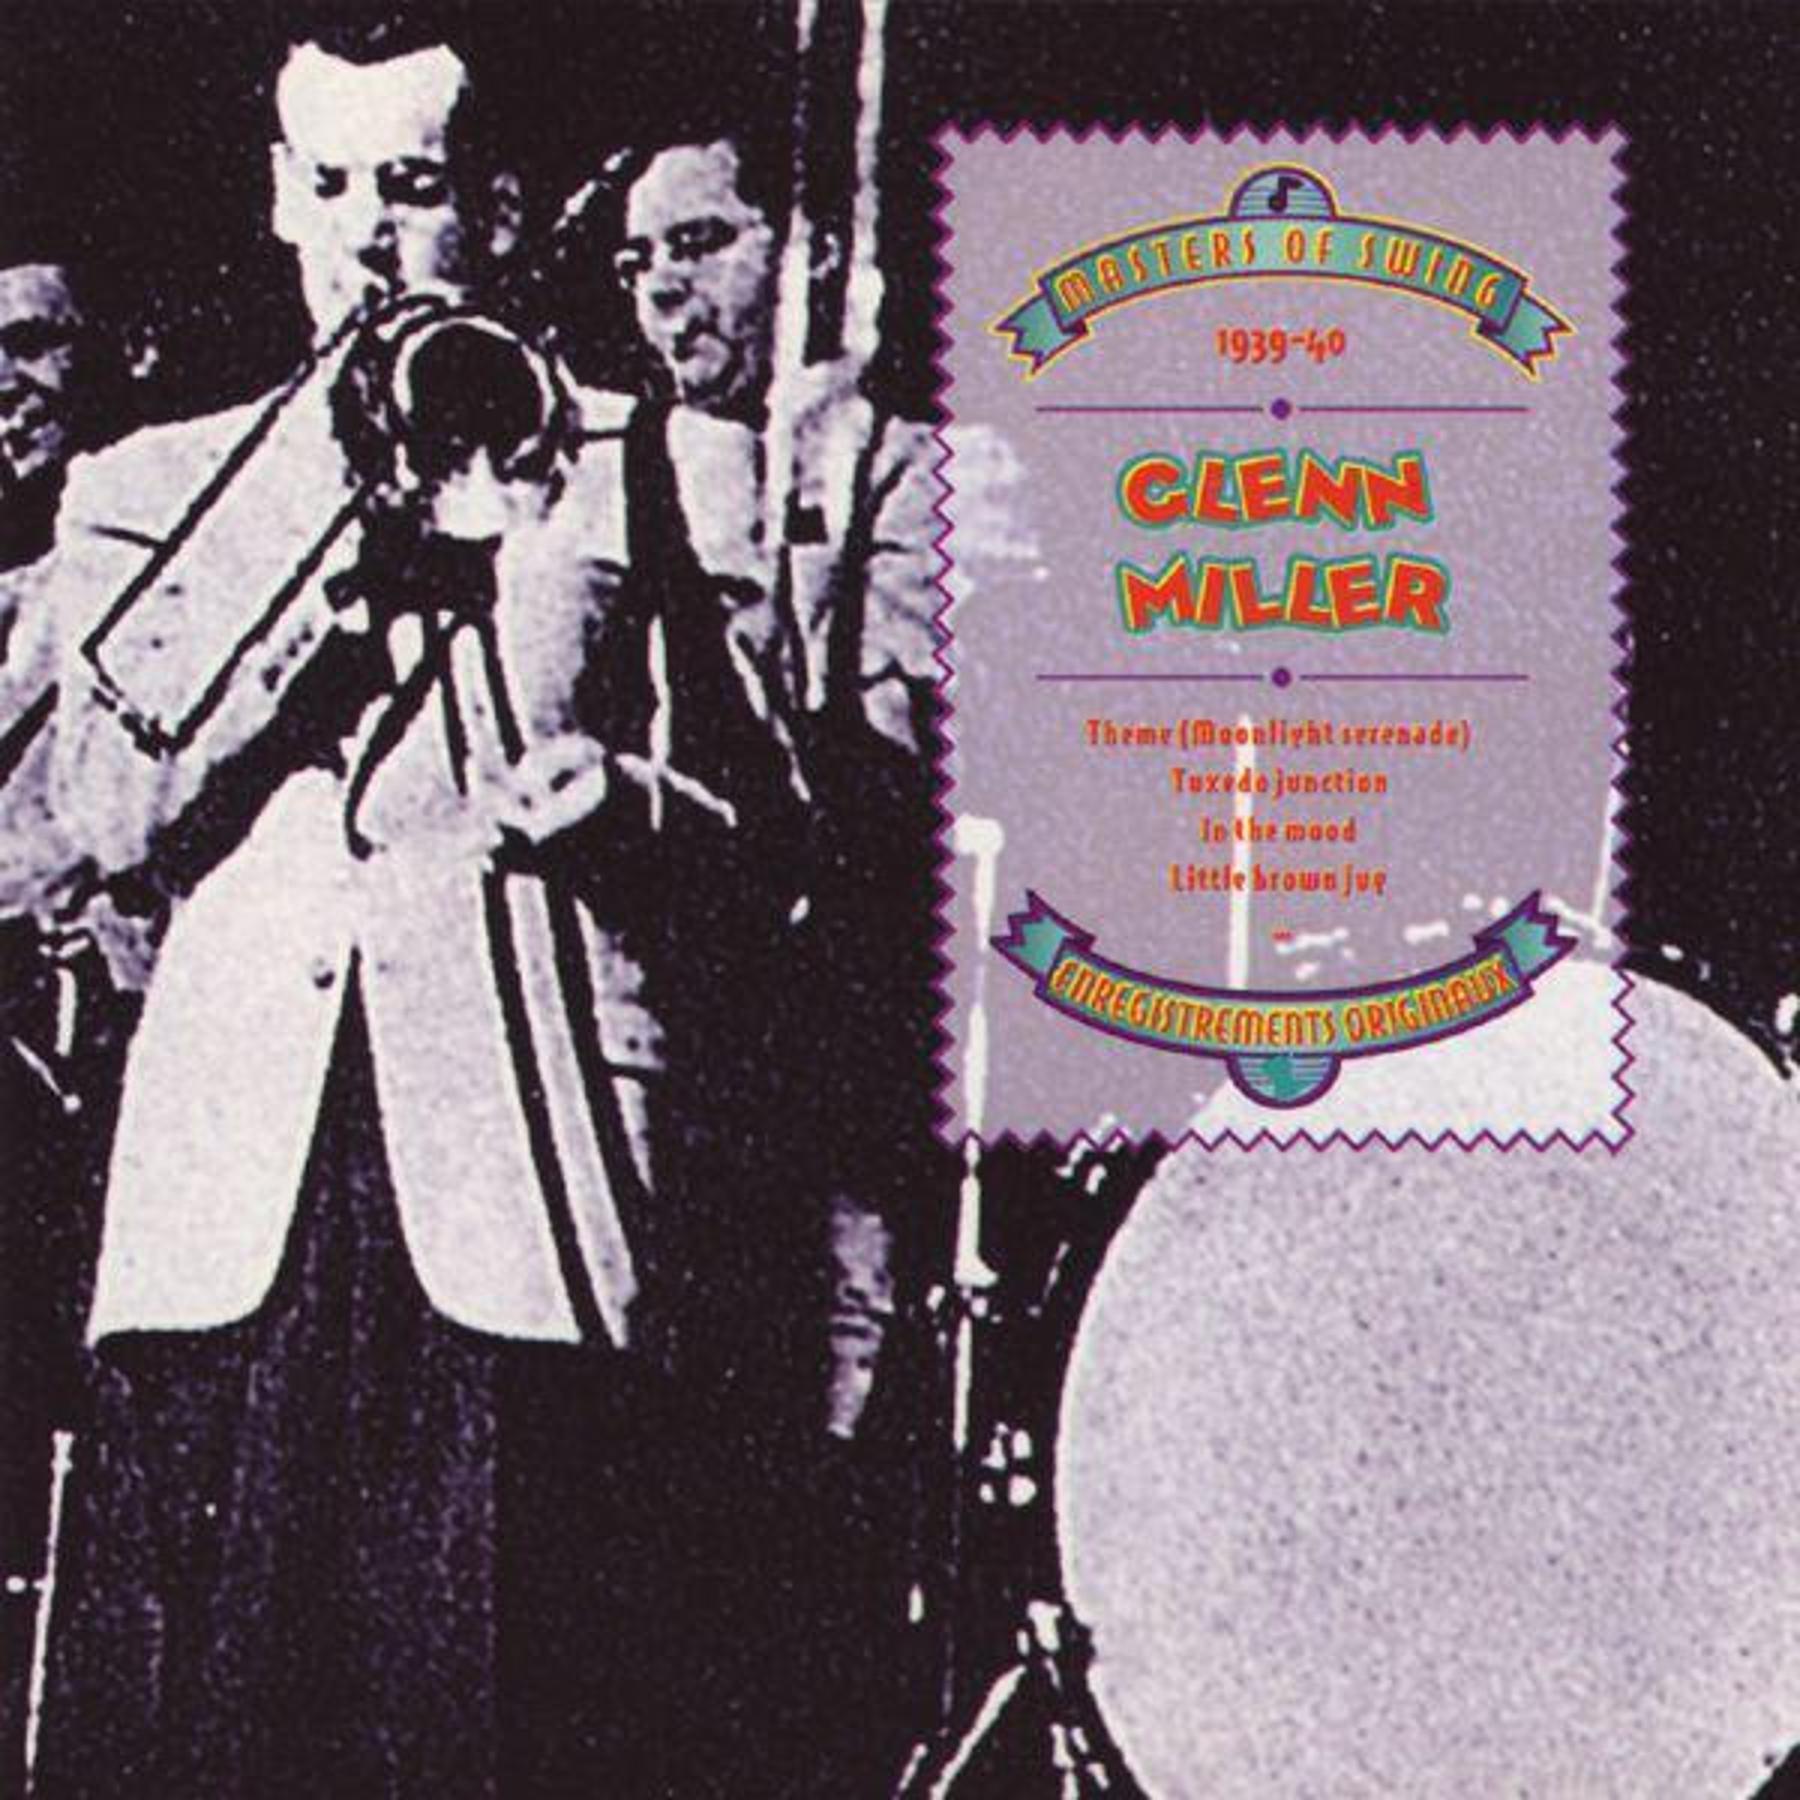 Masters of Swing - Glenn Miller